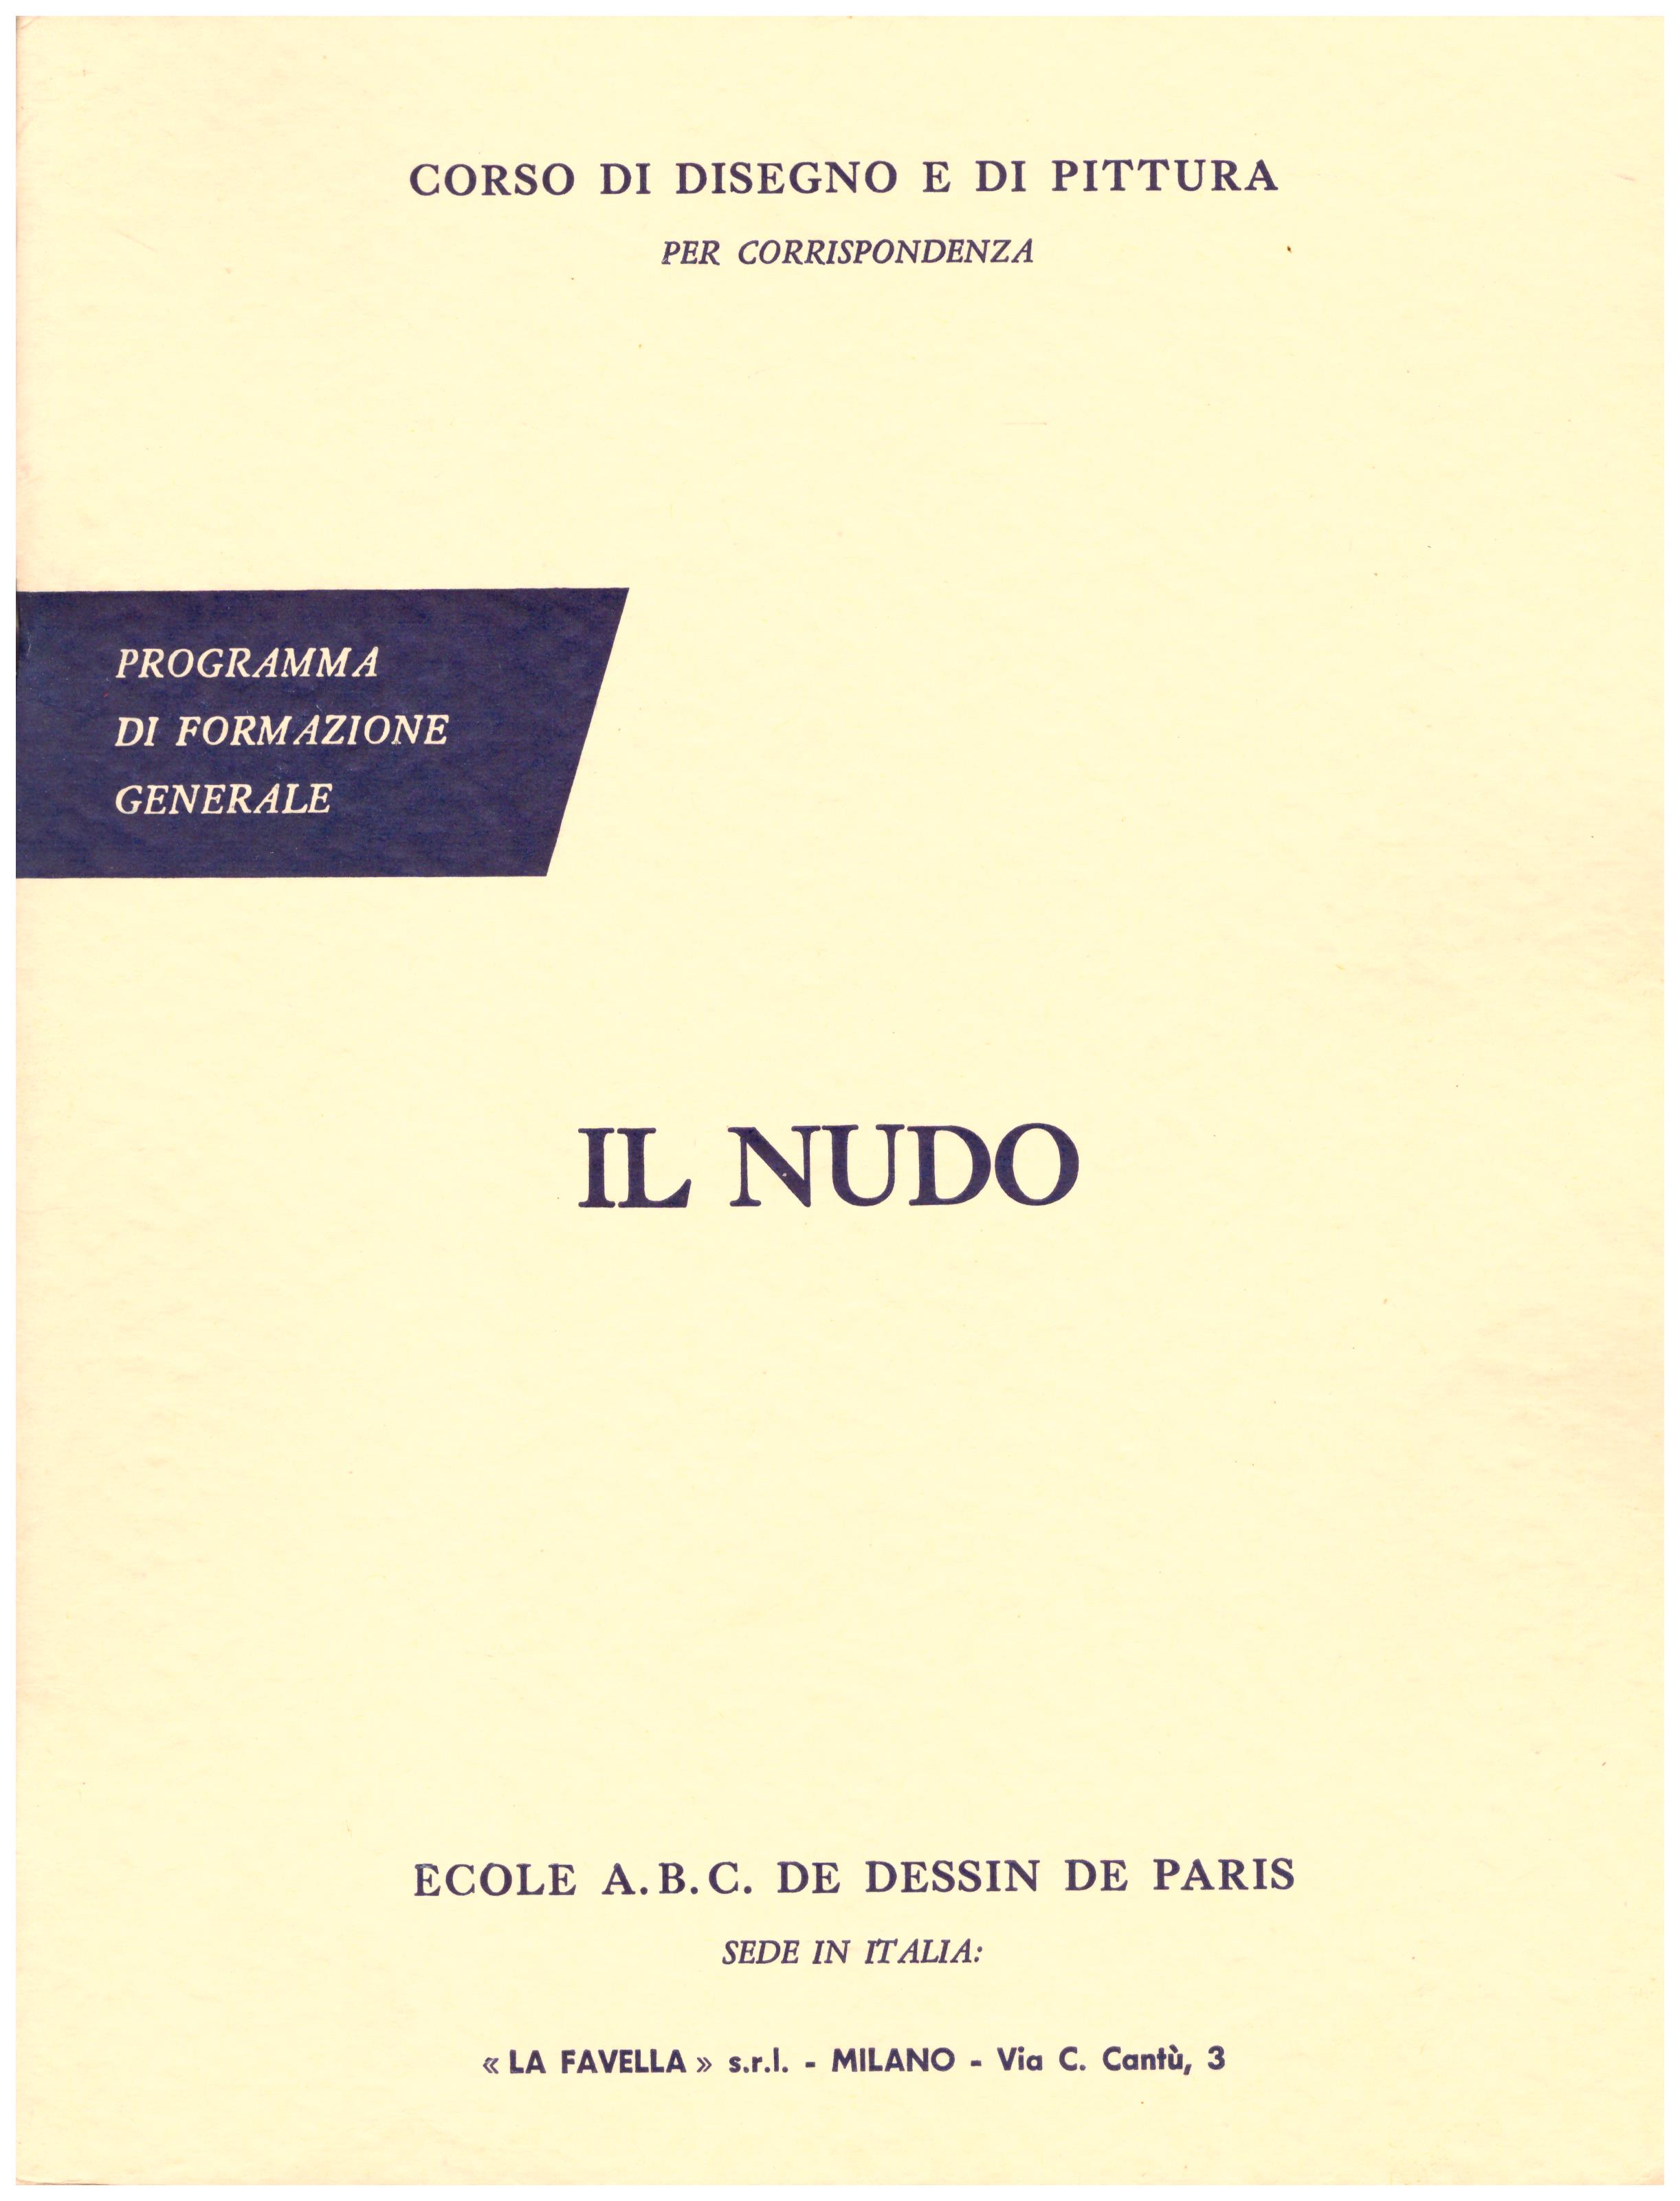 Titolo: Corso di disegno e pittura, il nudo Autore: AA.VV.  Editore: Ecole A.B.C. de dessin de Paris sede in Italia: La Favella, Milano 1962